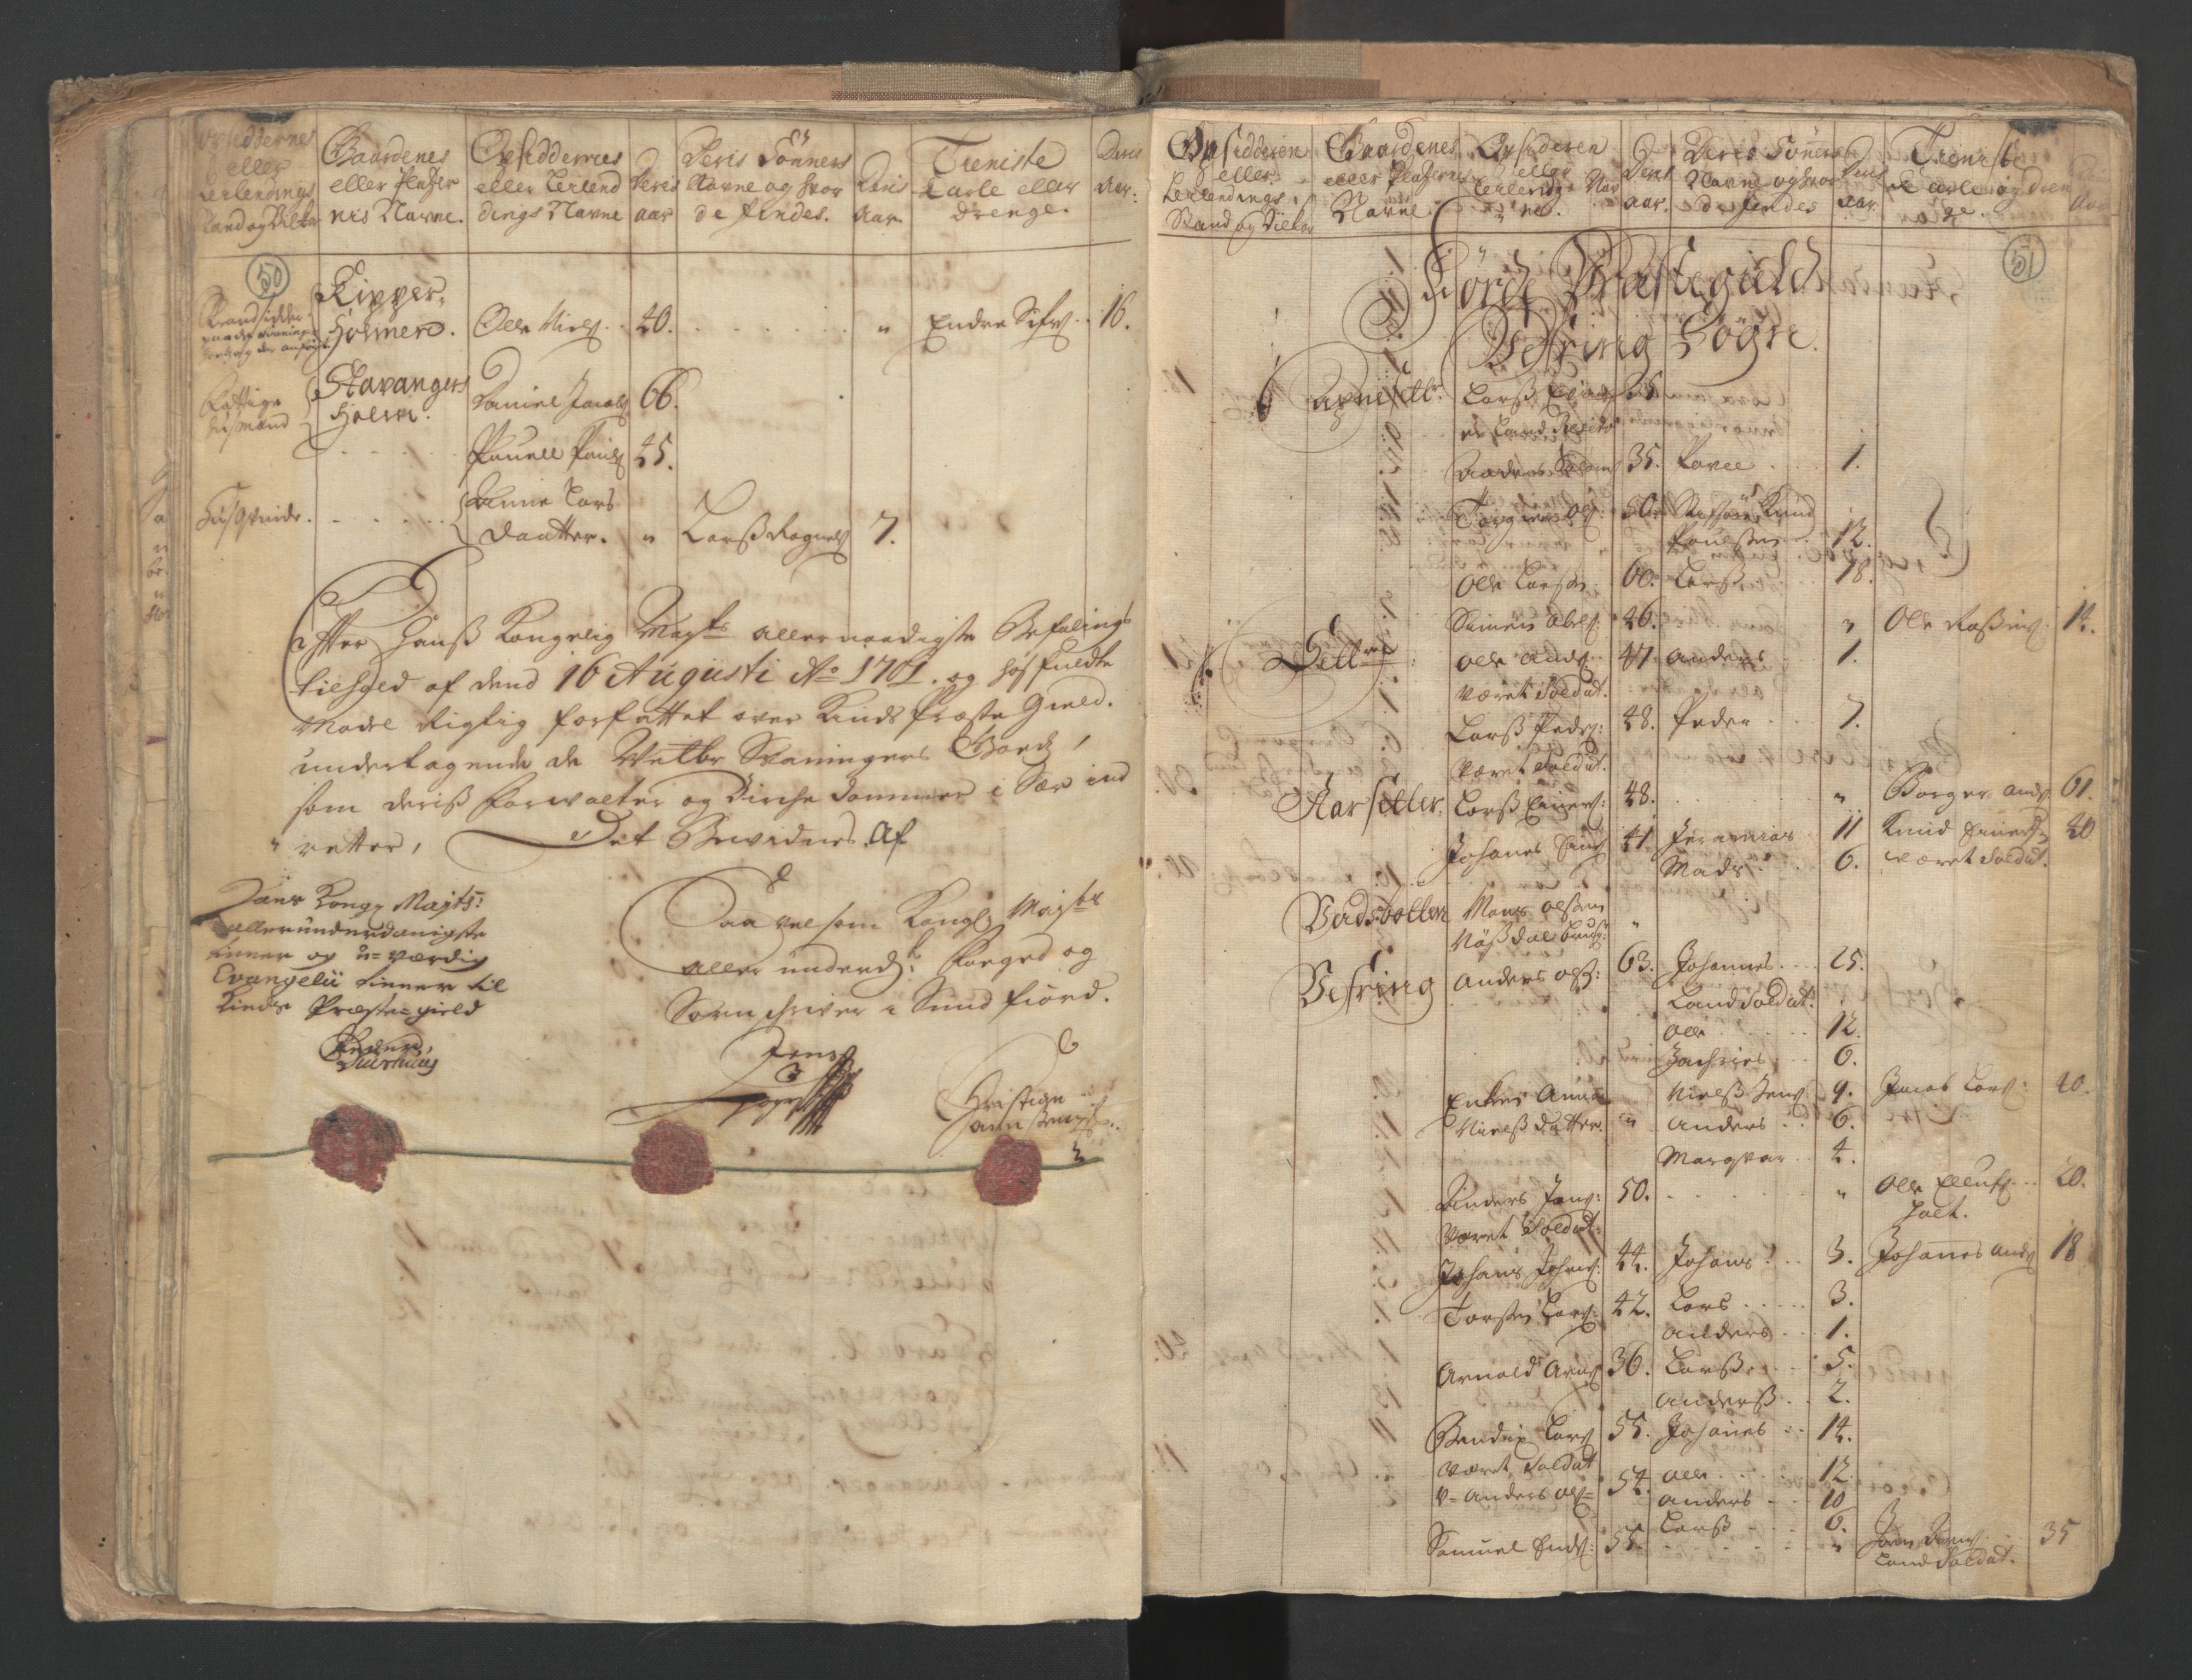 RA, Census (manntall) 1701, no. 9: Sunnfjord fogderi, Nordfjord fogderi and Svanø birk, 1701, p. 50-51